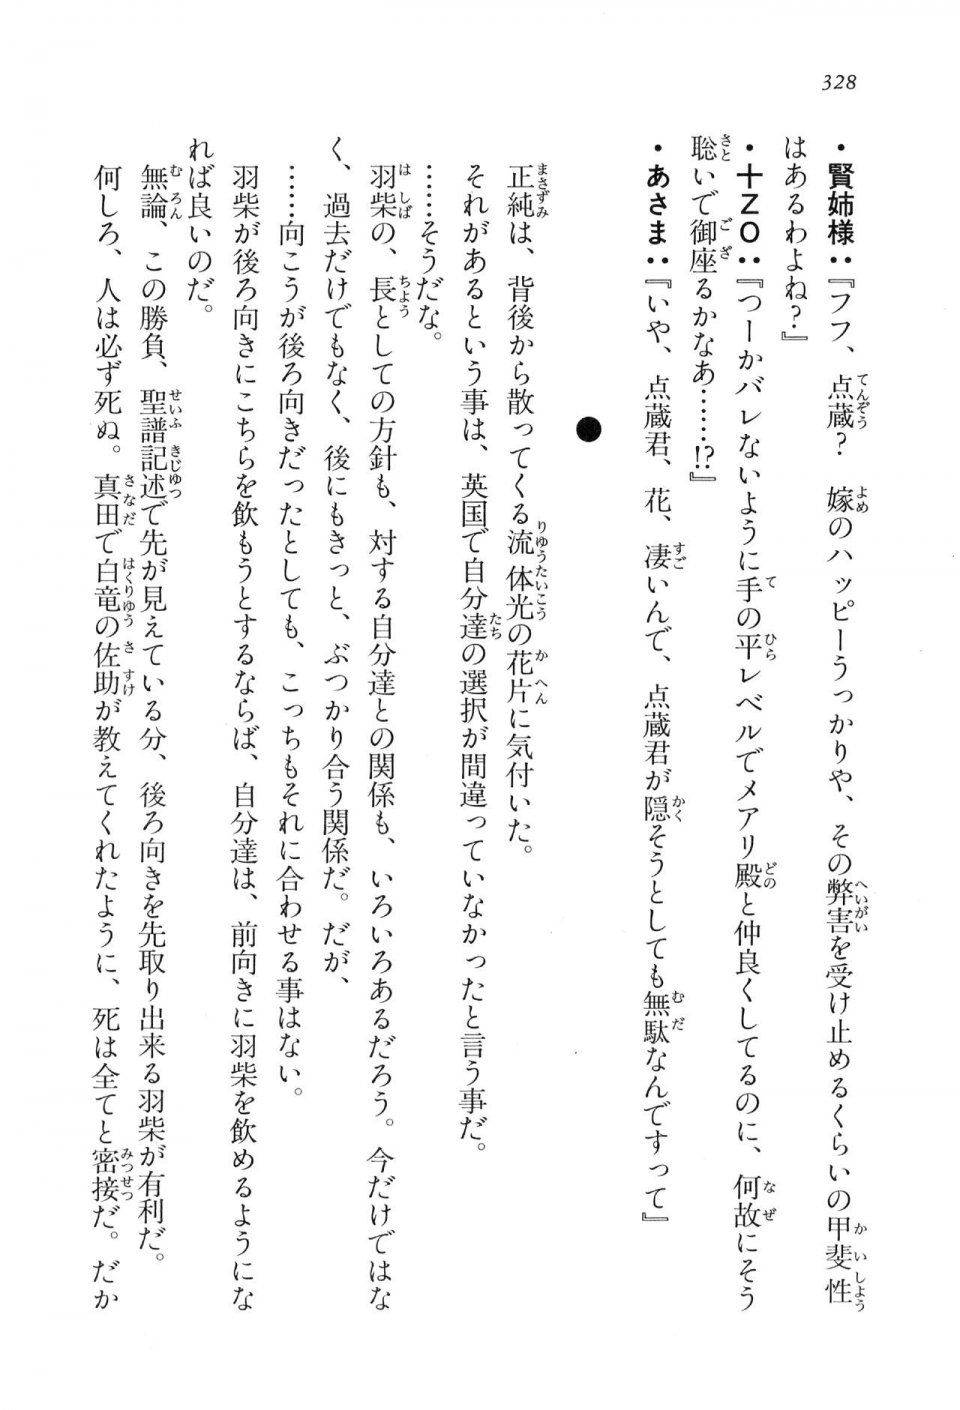 Kyoukai Senjou no Horizon LN Vol 16(7A) - Photo #328